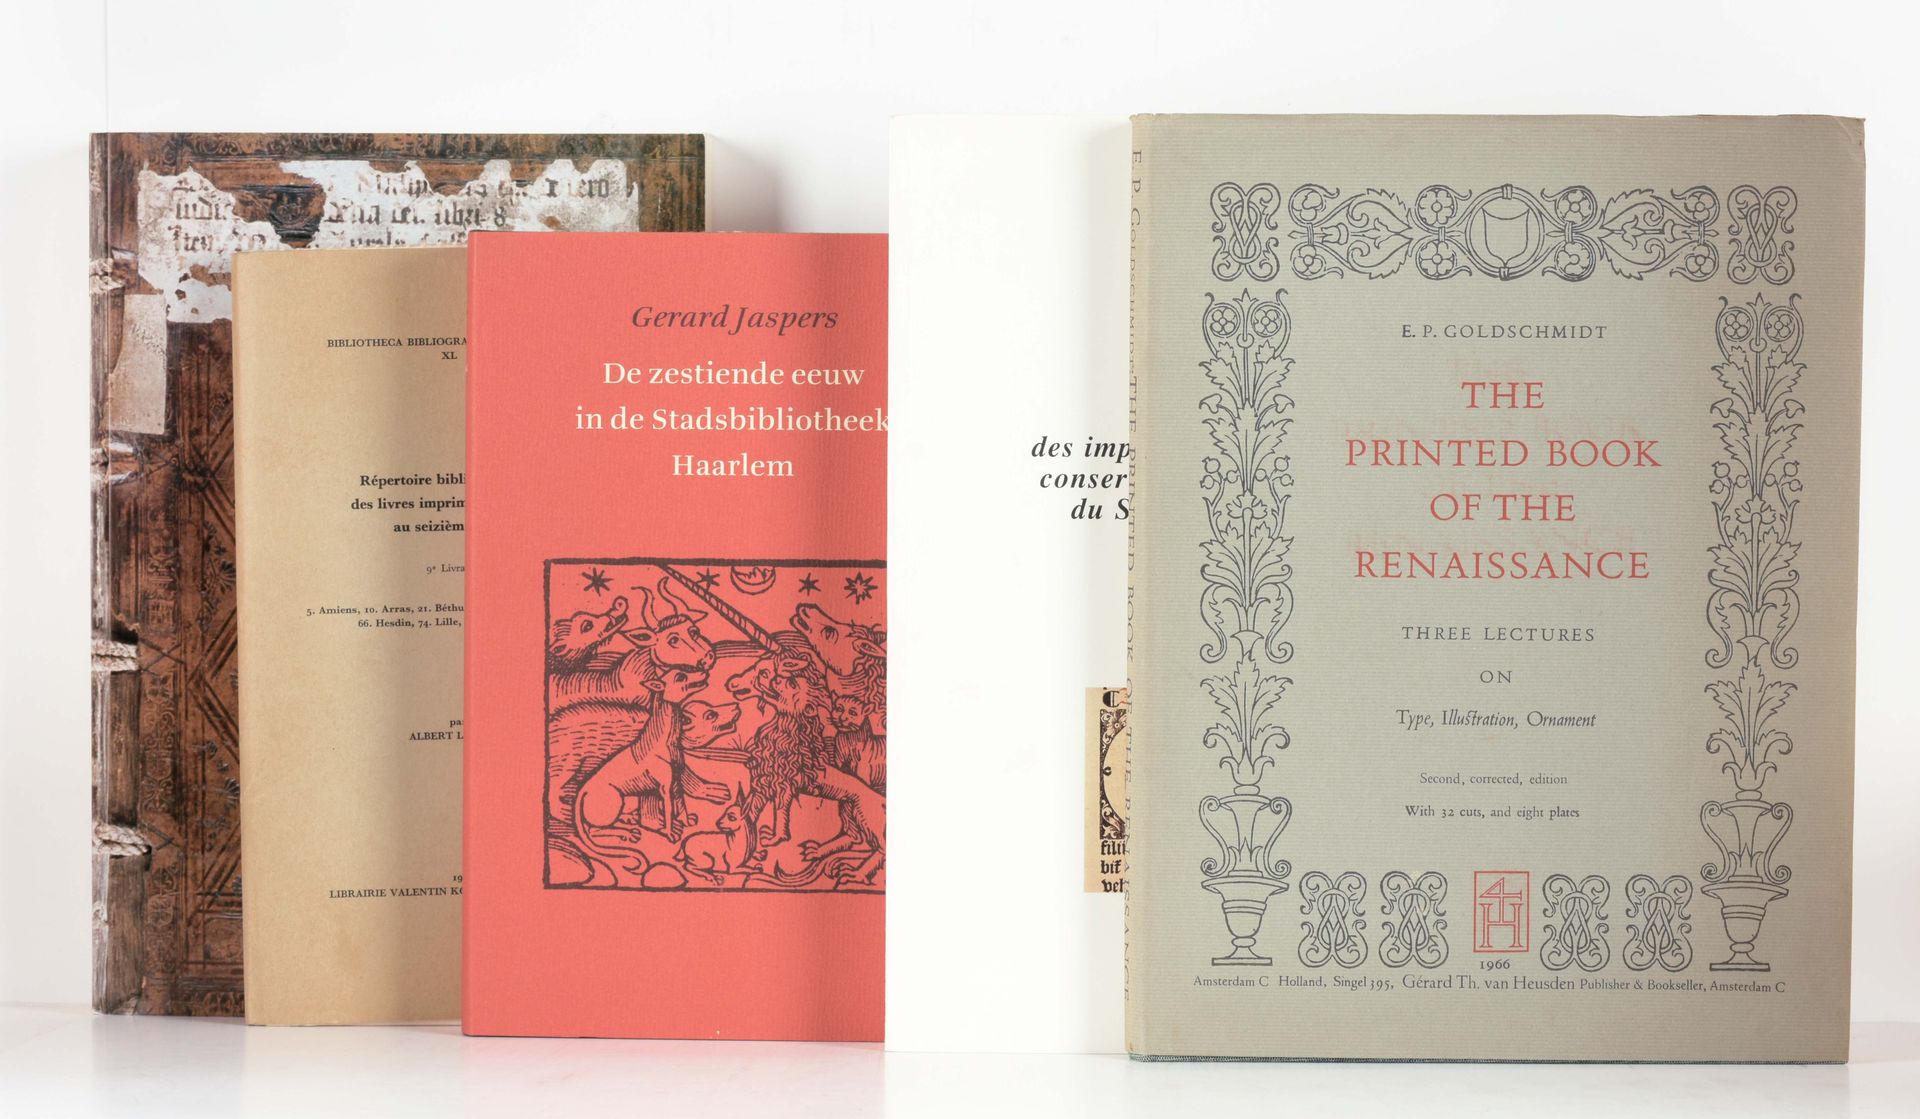 GOLDSCHMIDT, E.P. Das gedruckte Buch der Renaissance, drei Vorlesungen über Schr&hellip;